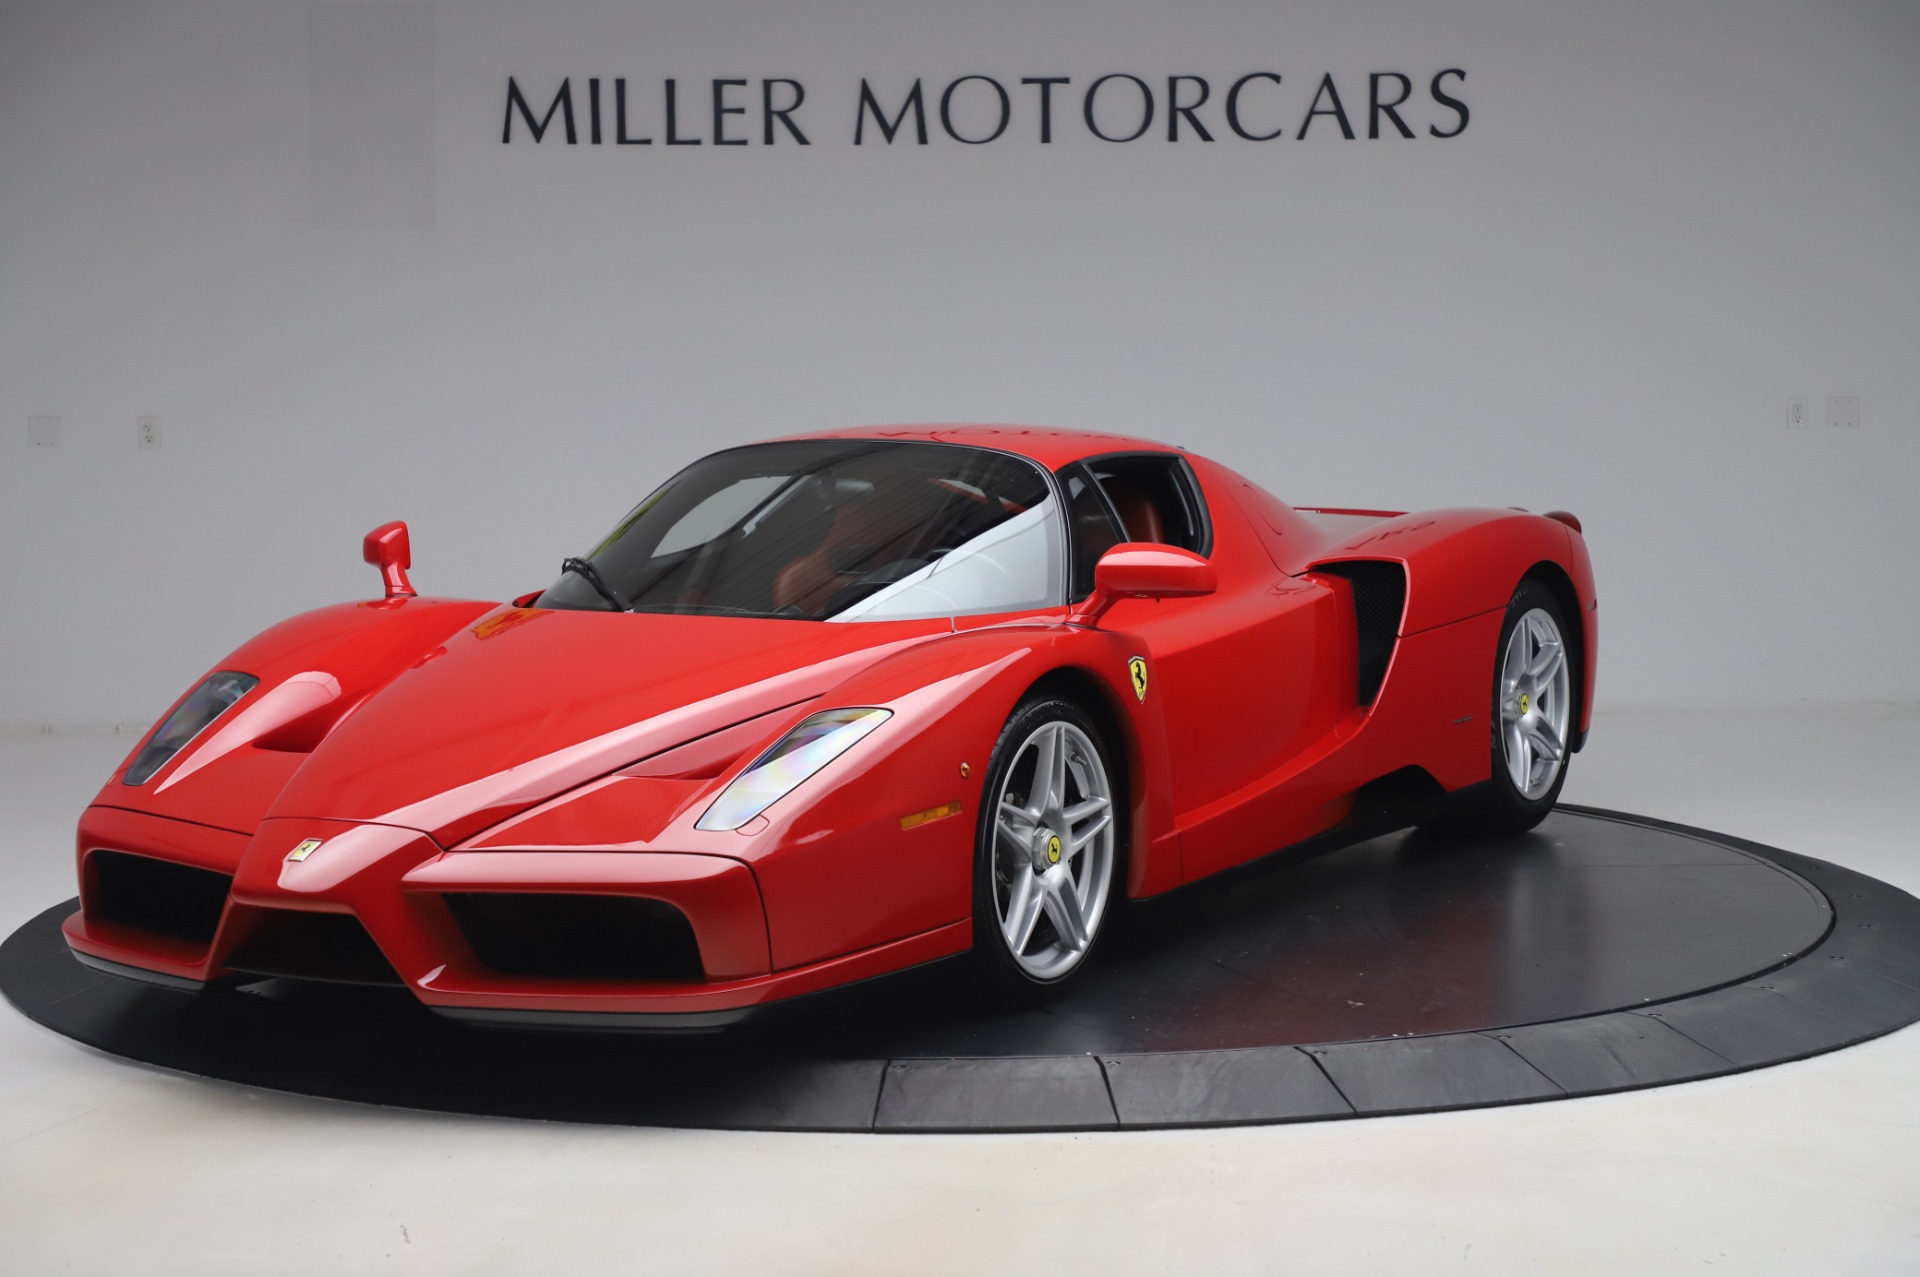 Pre Owned 03 Ferrari Enzo For Sale Miller Motorcars Stock 4693c